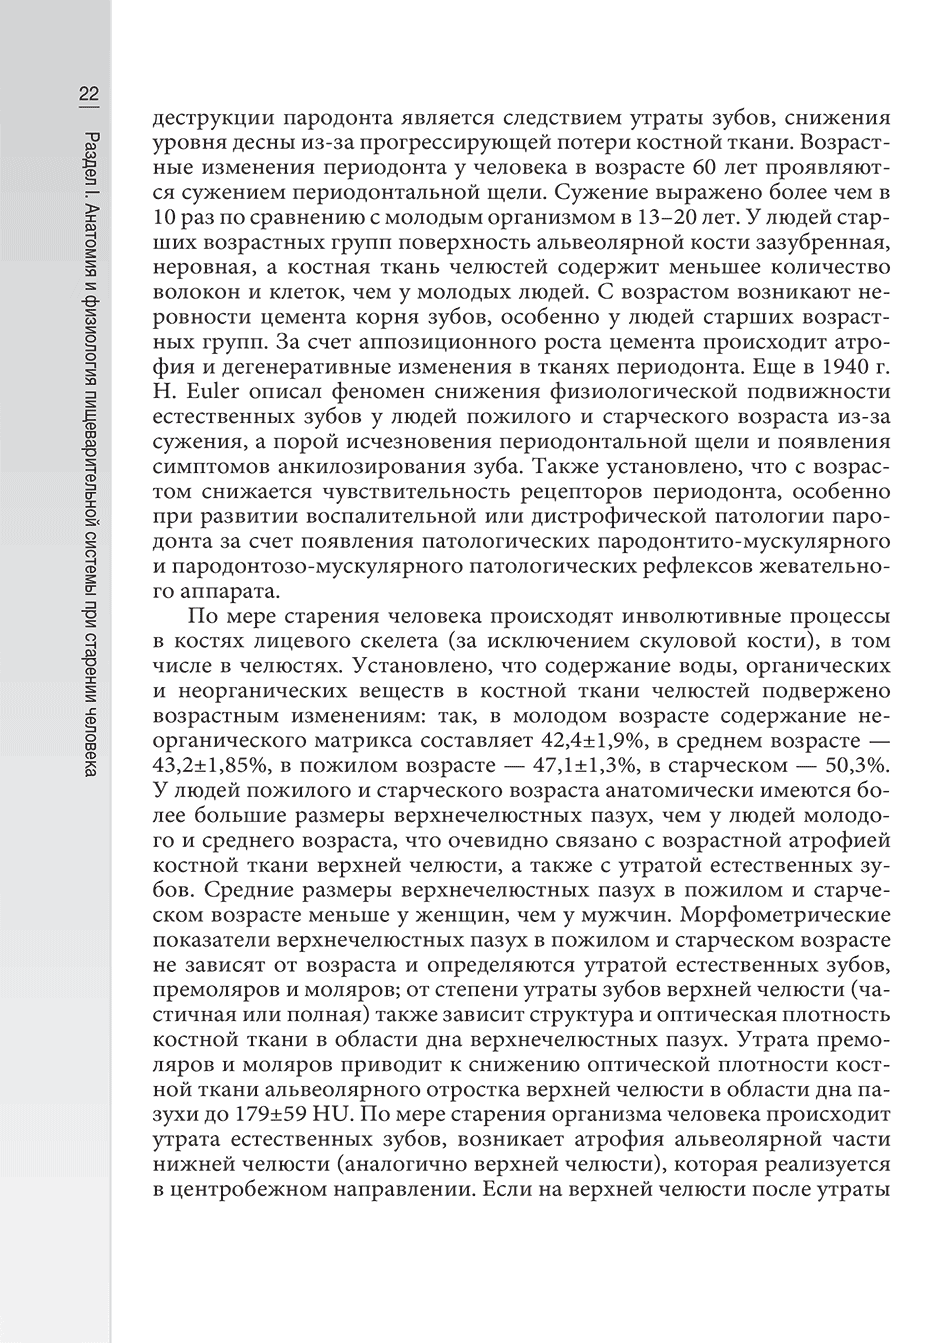 Пример страницы из книги "Гериатрическая гастроэнтерология: руководство для врачей" - Хорошинина Л. П.